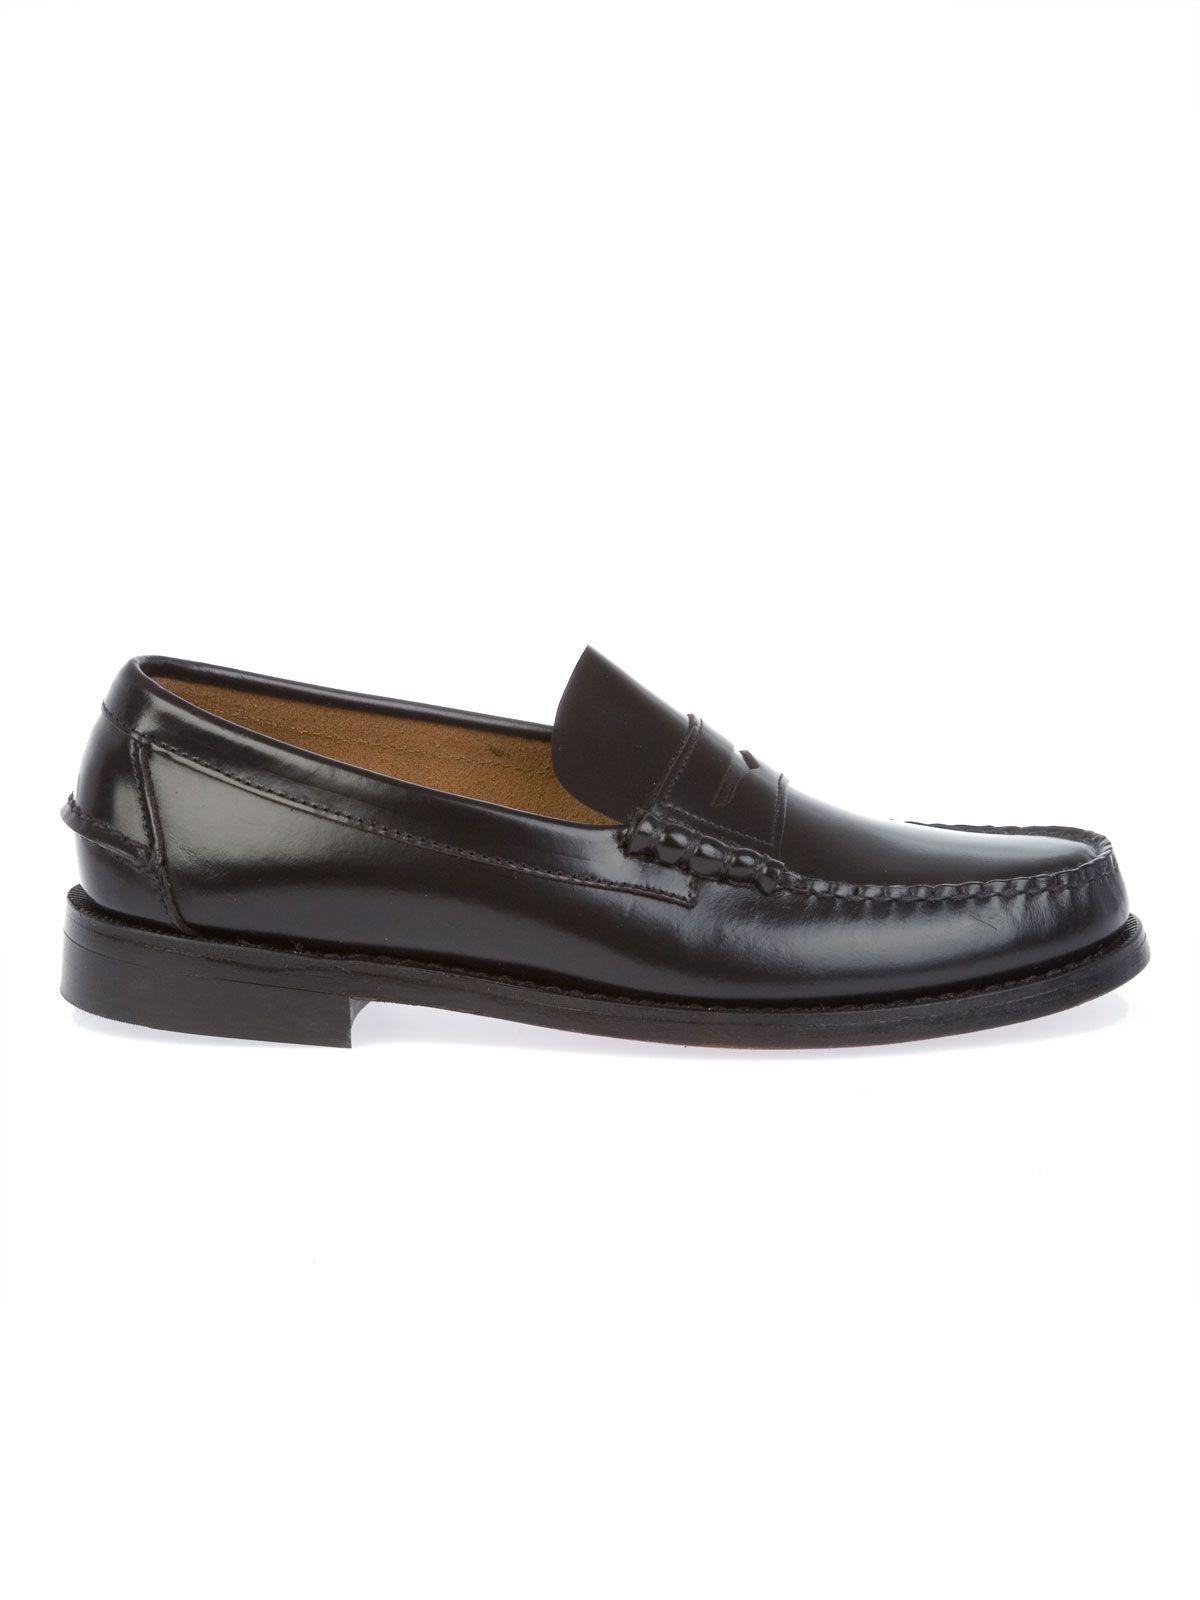 Sebago Black Leather Loafers for Men - Lyst